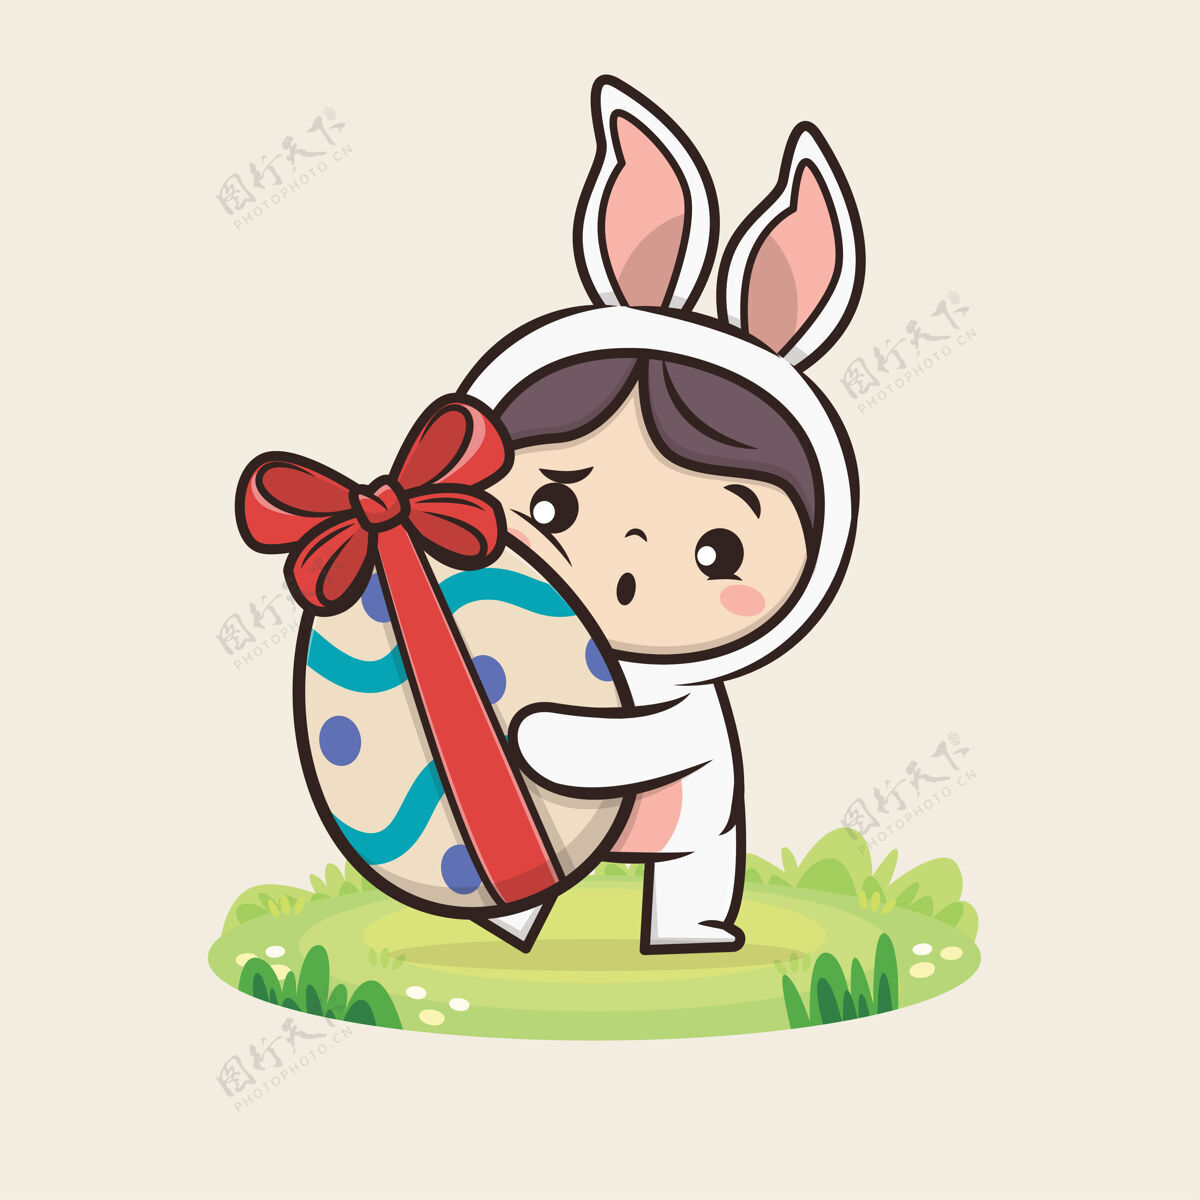 可爱复活节快乐可爱的兔子插图可爱吉祥物标志寻蛋